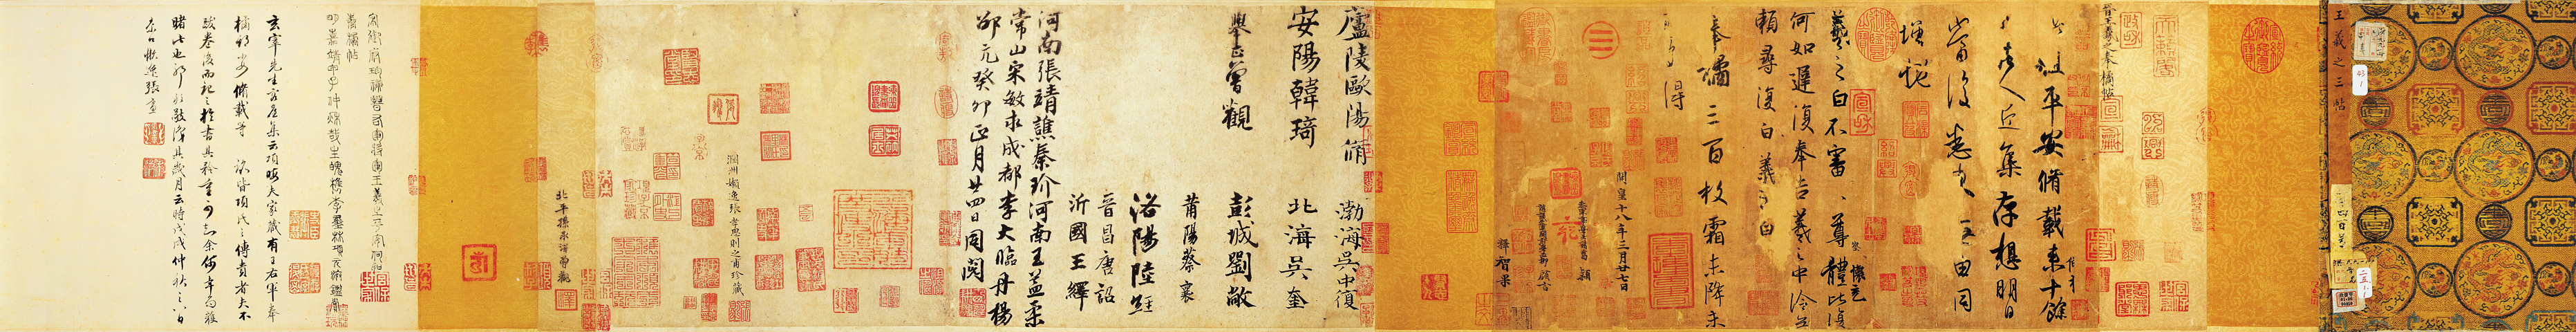 He Linghan (1772-1840) Calligraphy in cursive script, 何凌漢 草書軸 水墨灑金箋 立軸, Arts d'Asie, 2021